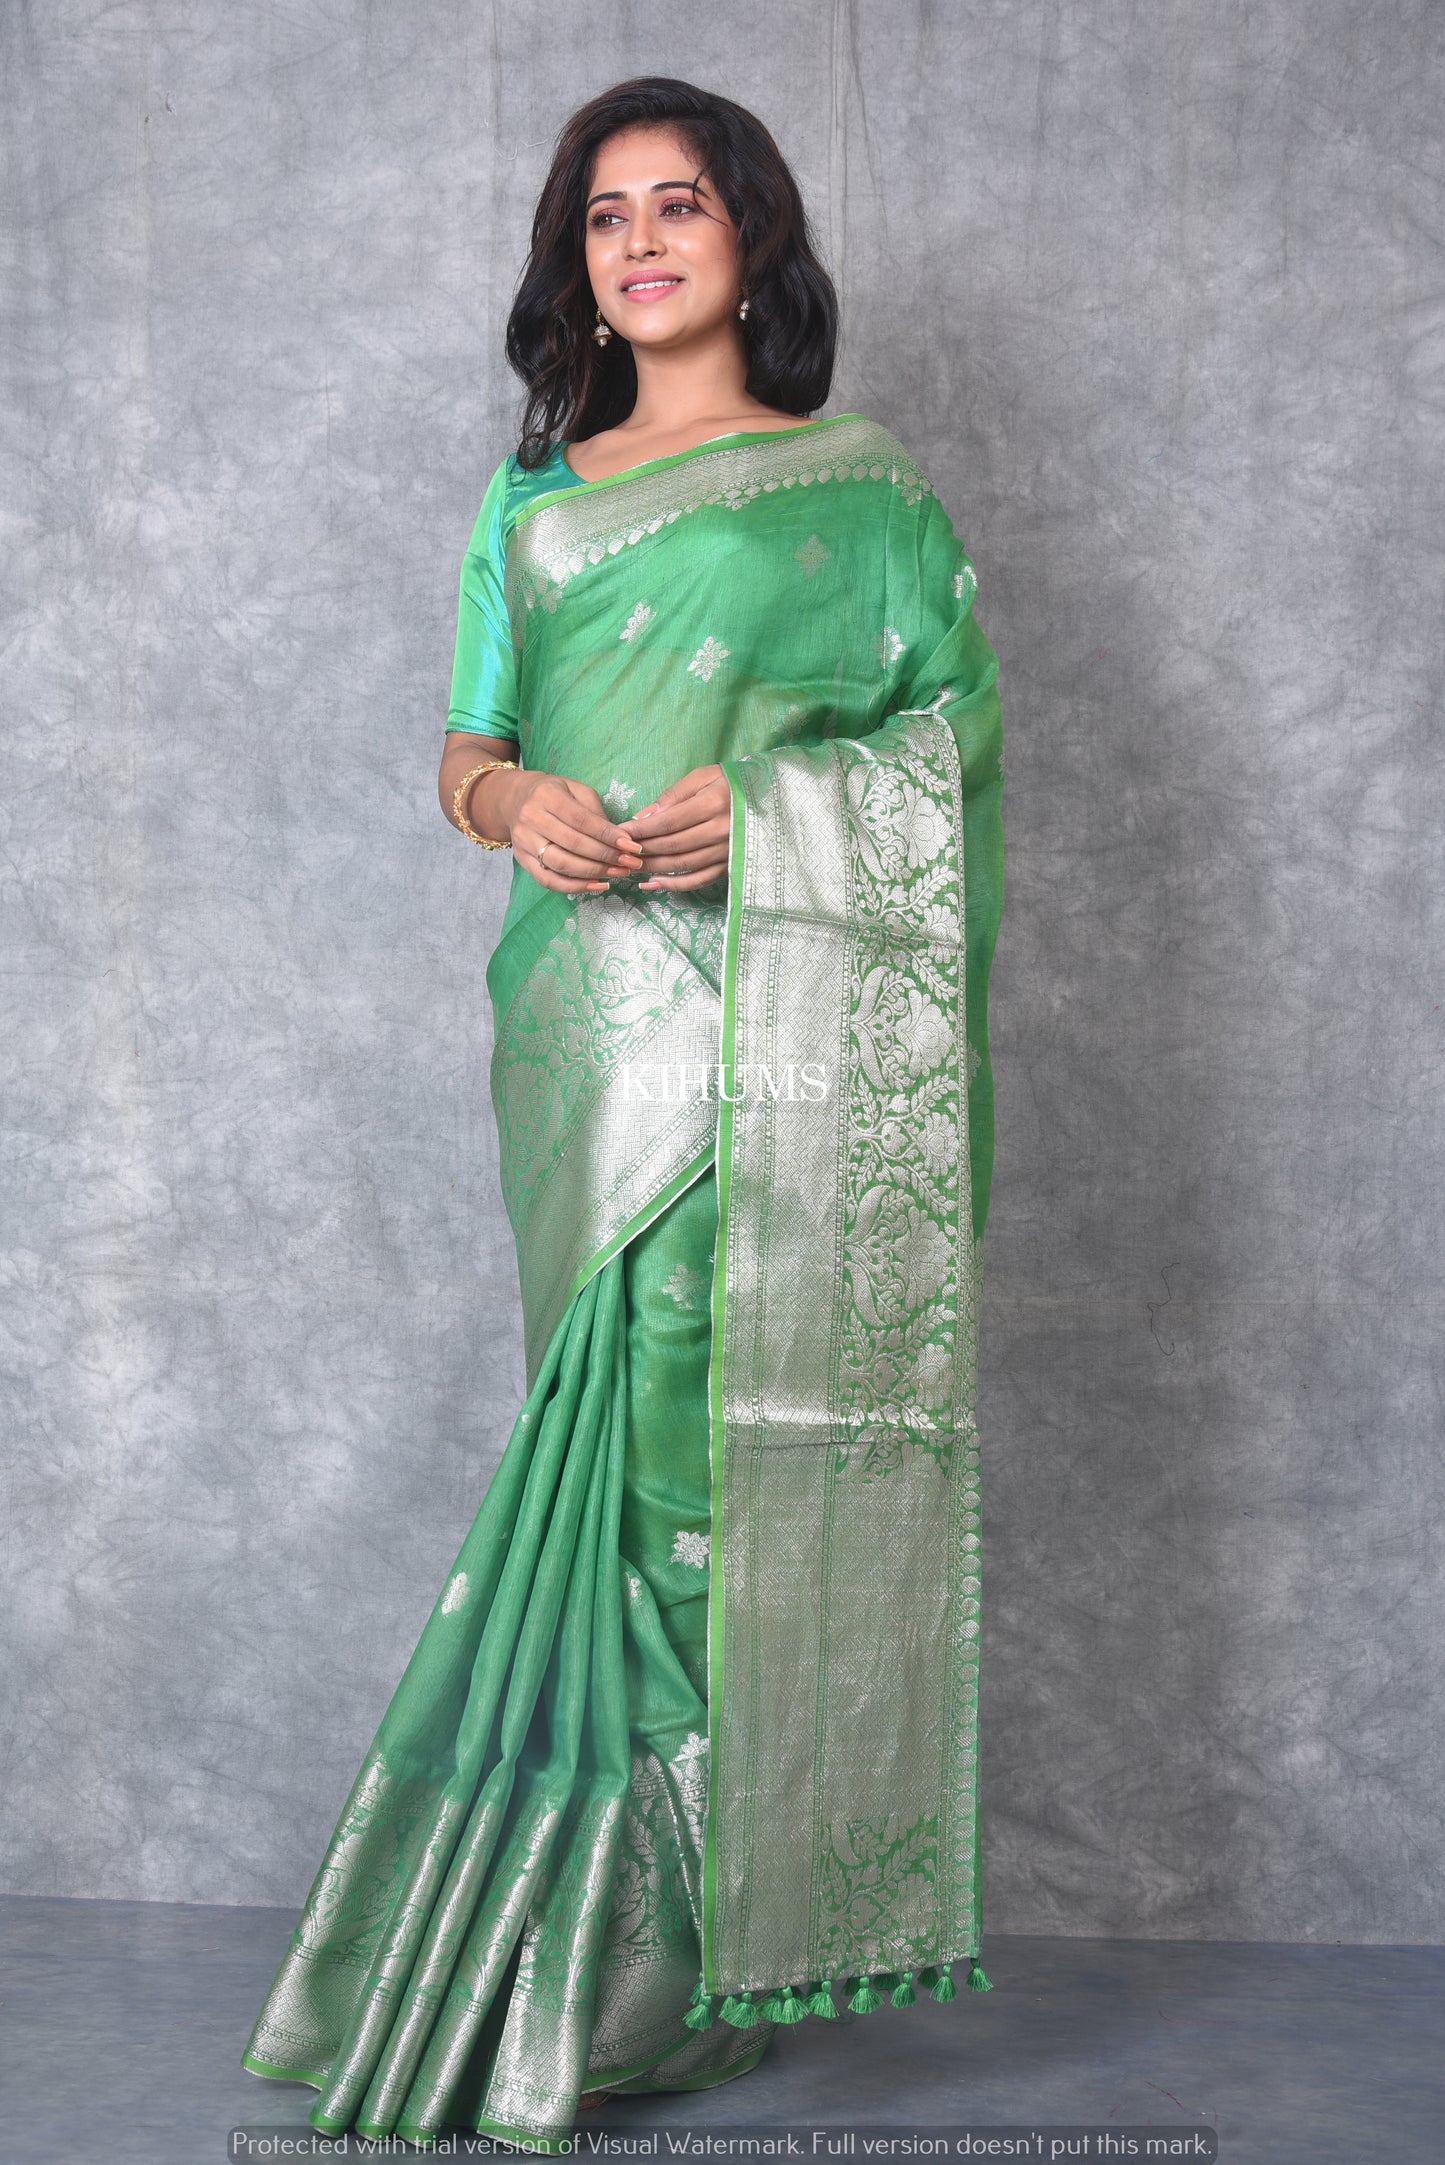 Green Banarasi Silk Linen Saree | Silver Zari Border | KIHUMS Saree